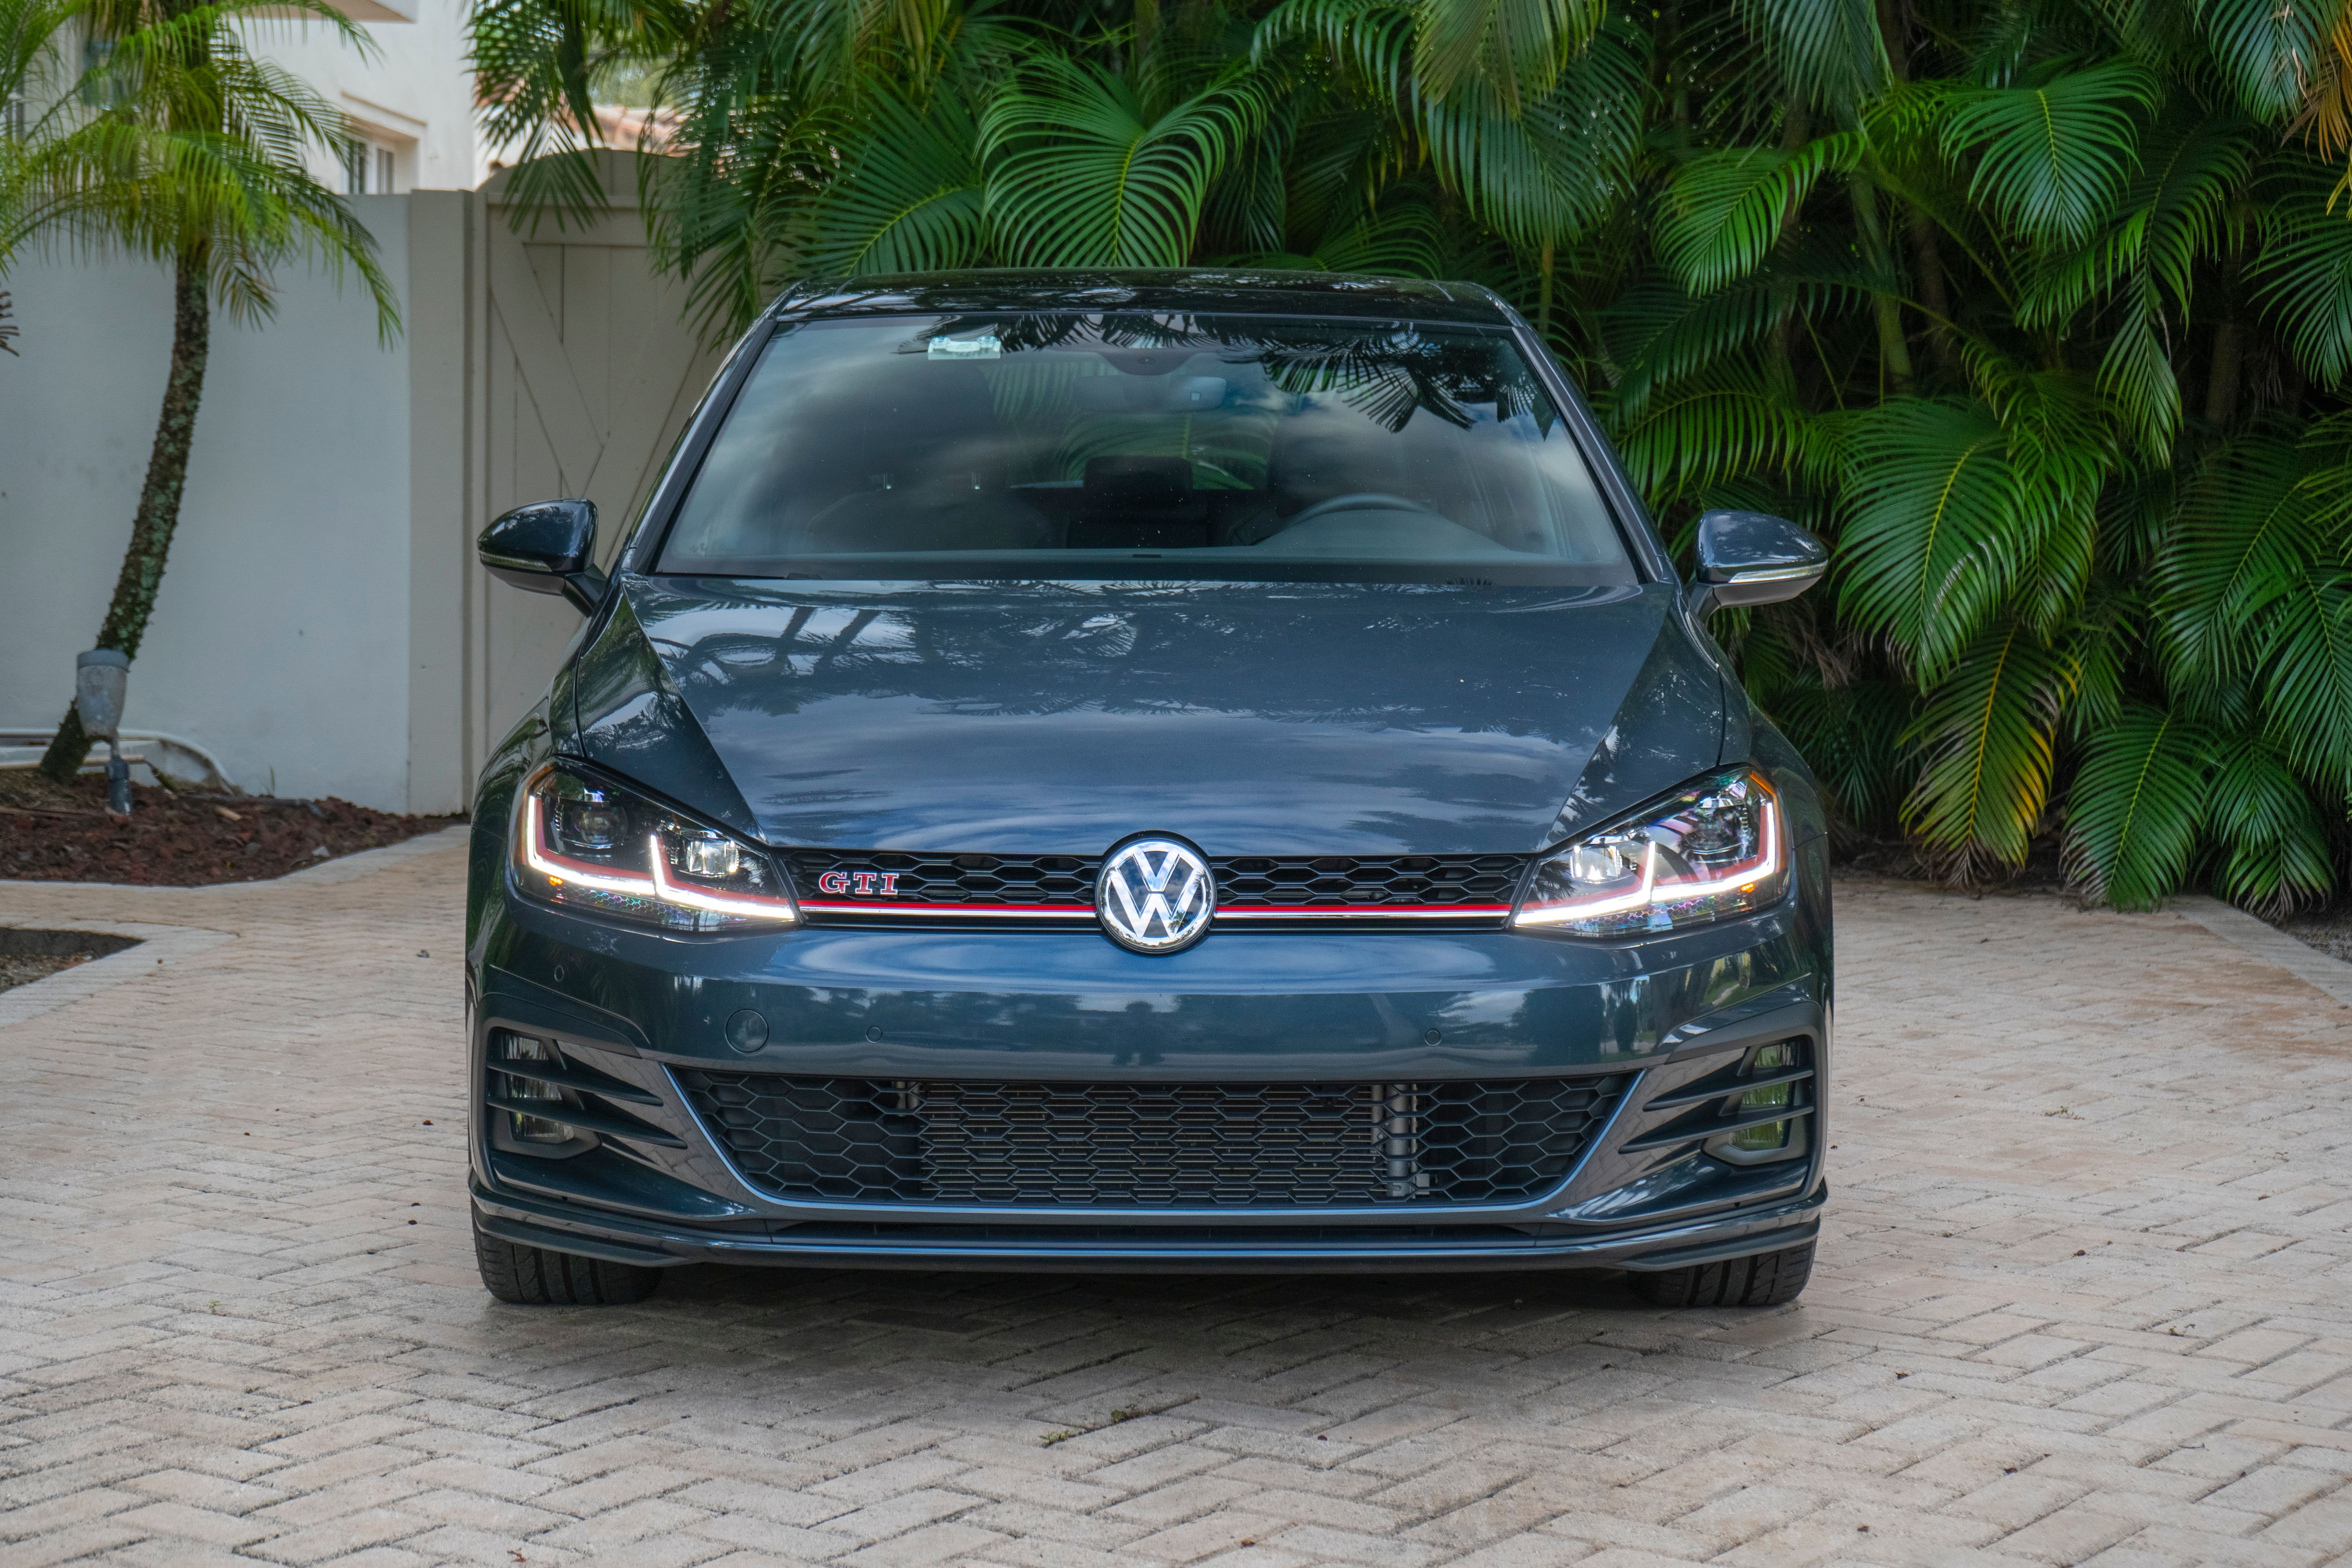 2019 Volkswagen Golf GTi - Driven